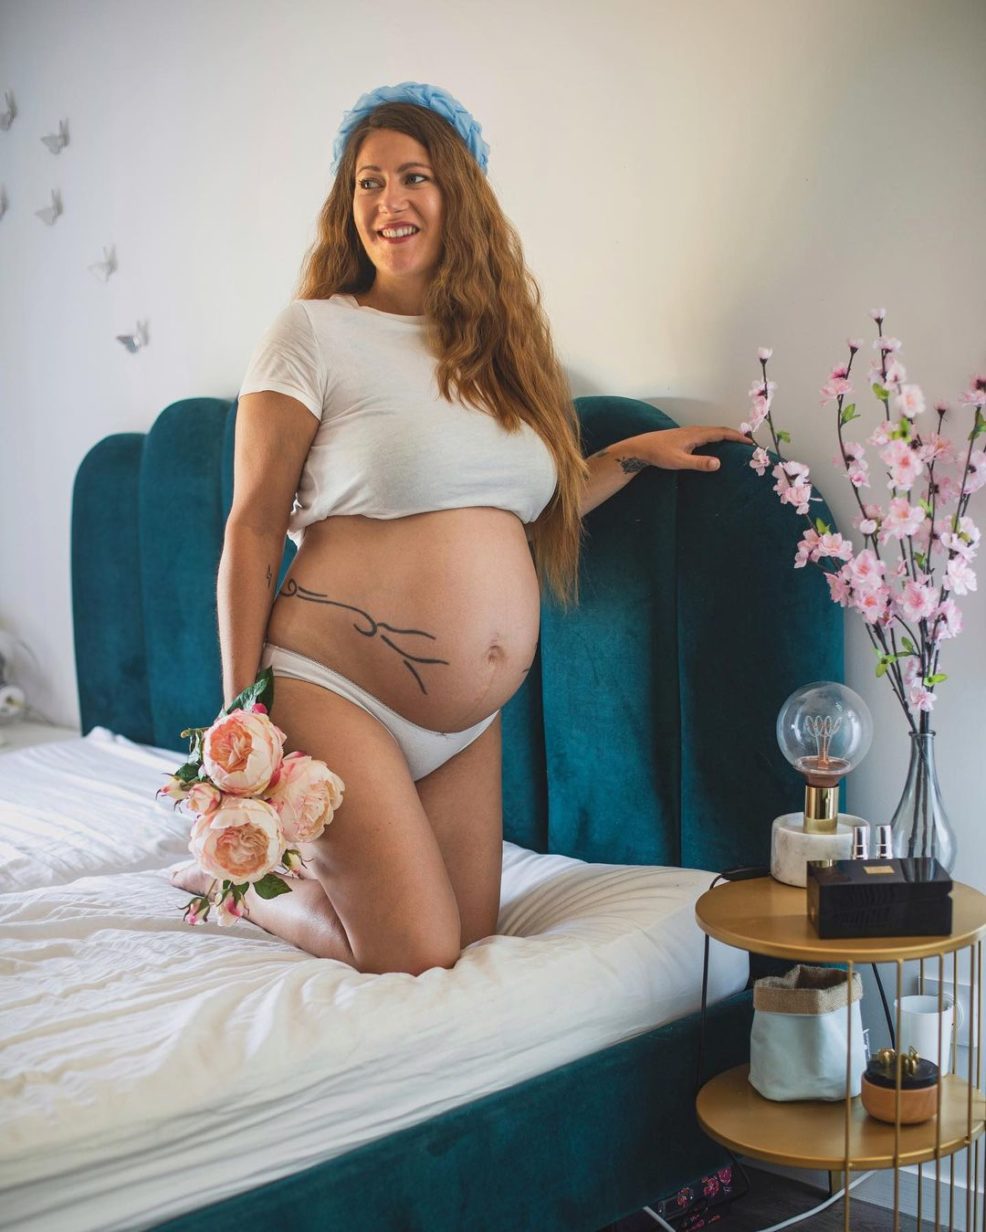 Comment faire une jolie photo enceinte ? Voici mes idées shooting de grossesse !